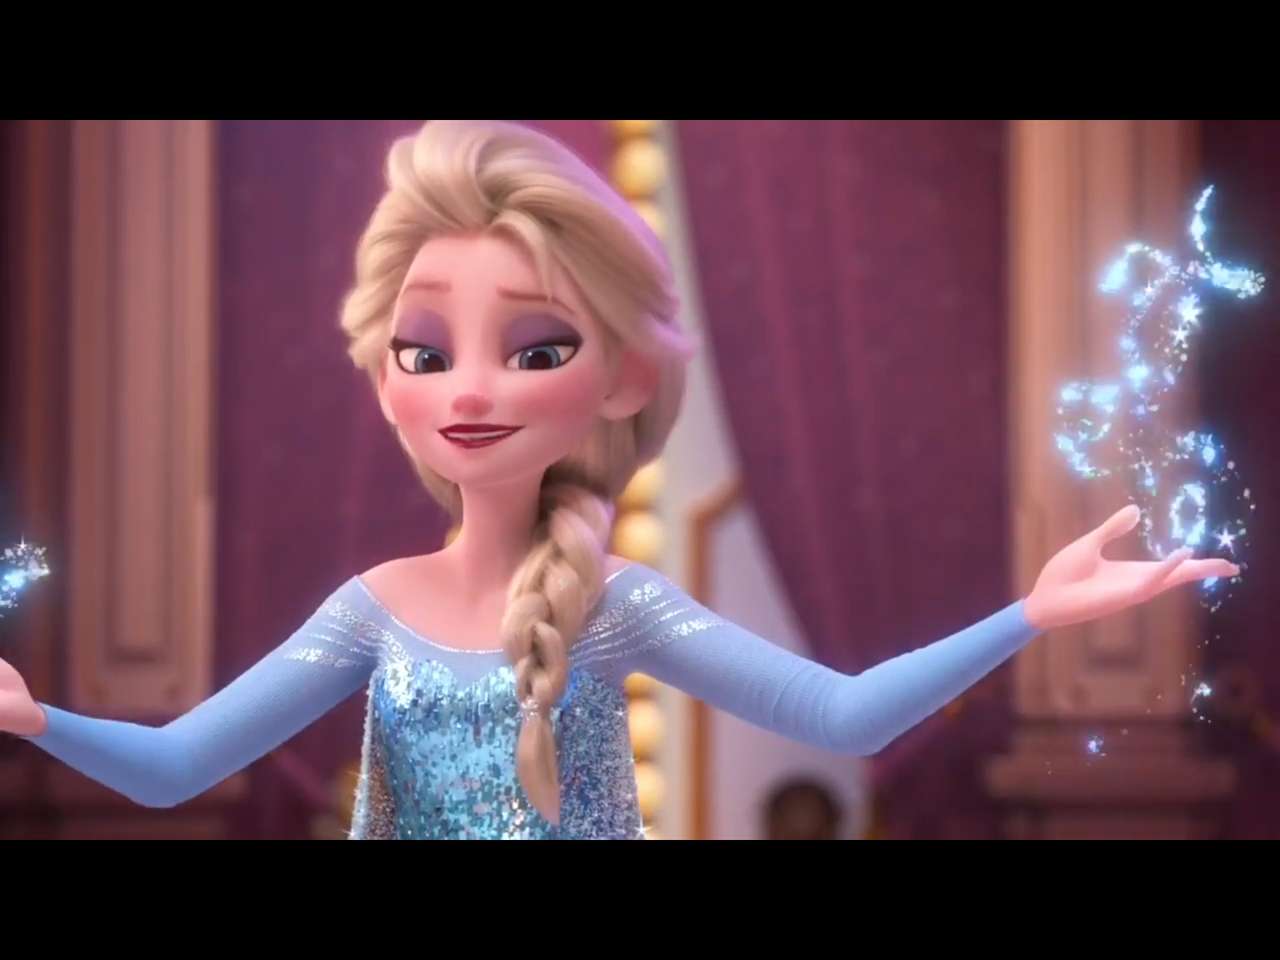 Puzzle pieces (Elsa the princess) from Frozen online puzzle